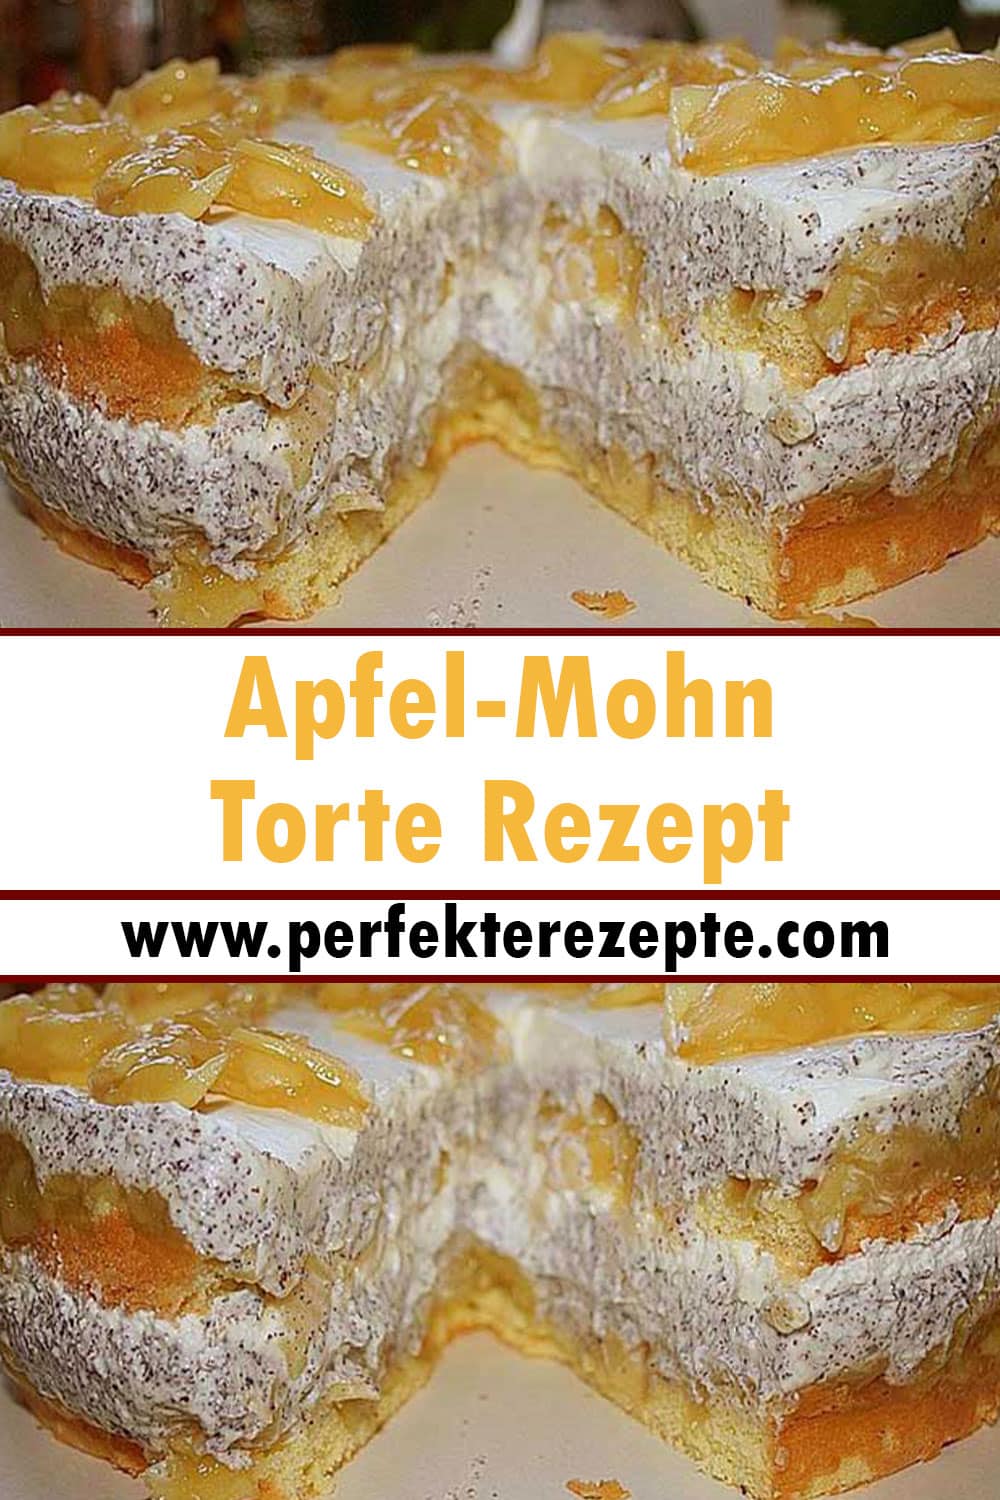 Apfel-Mohn Torte Rezept